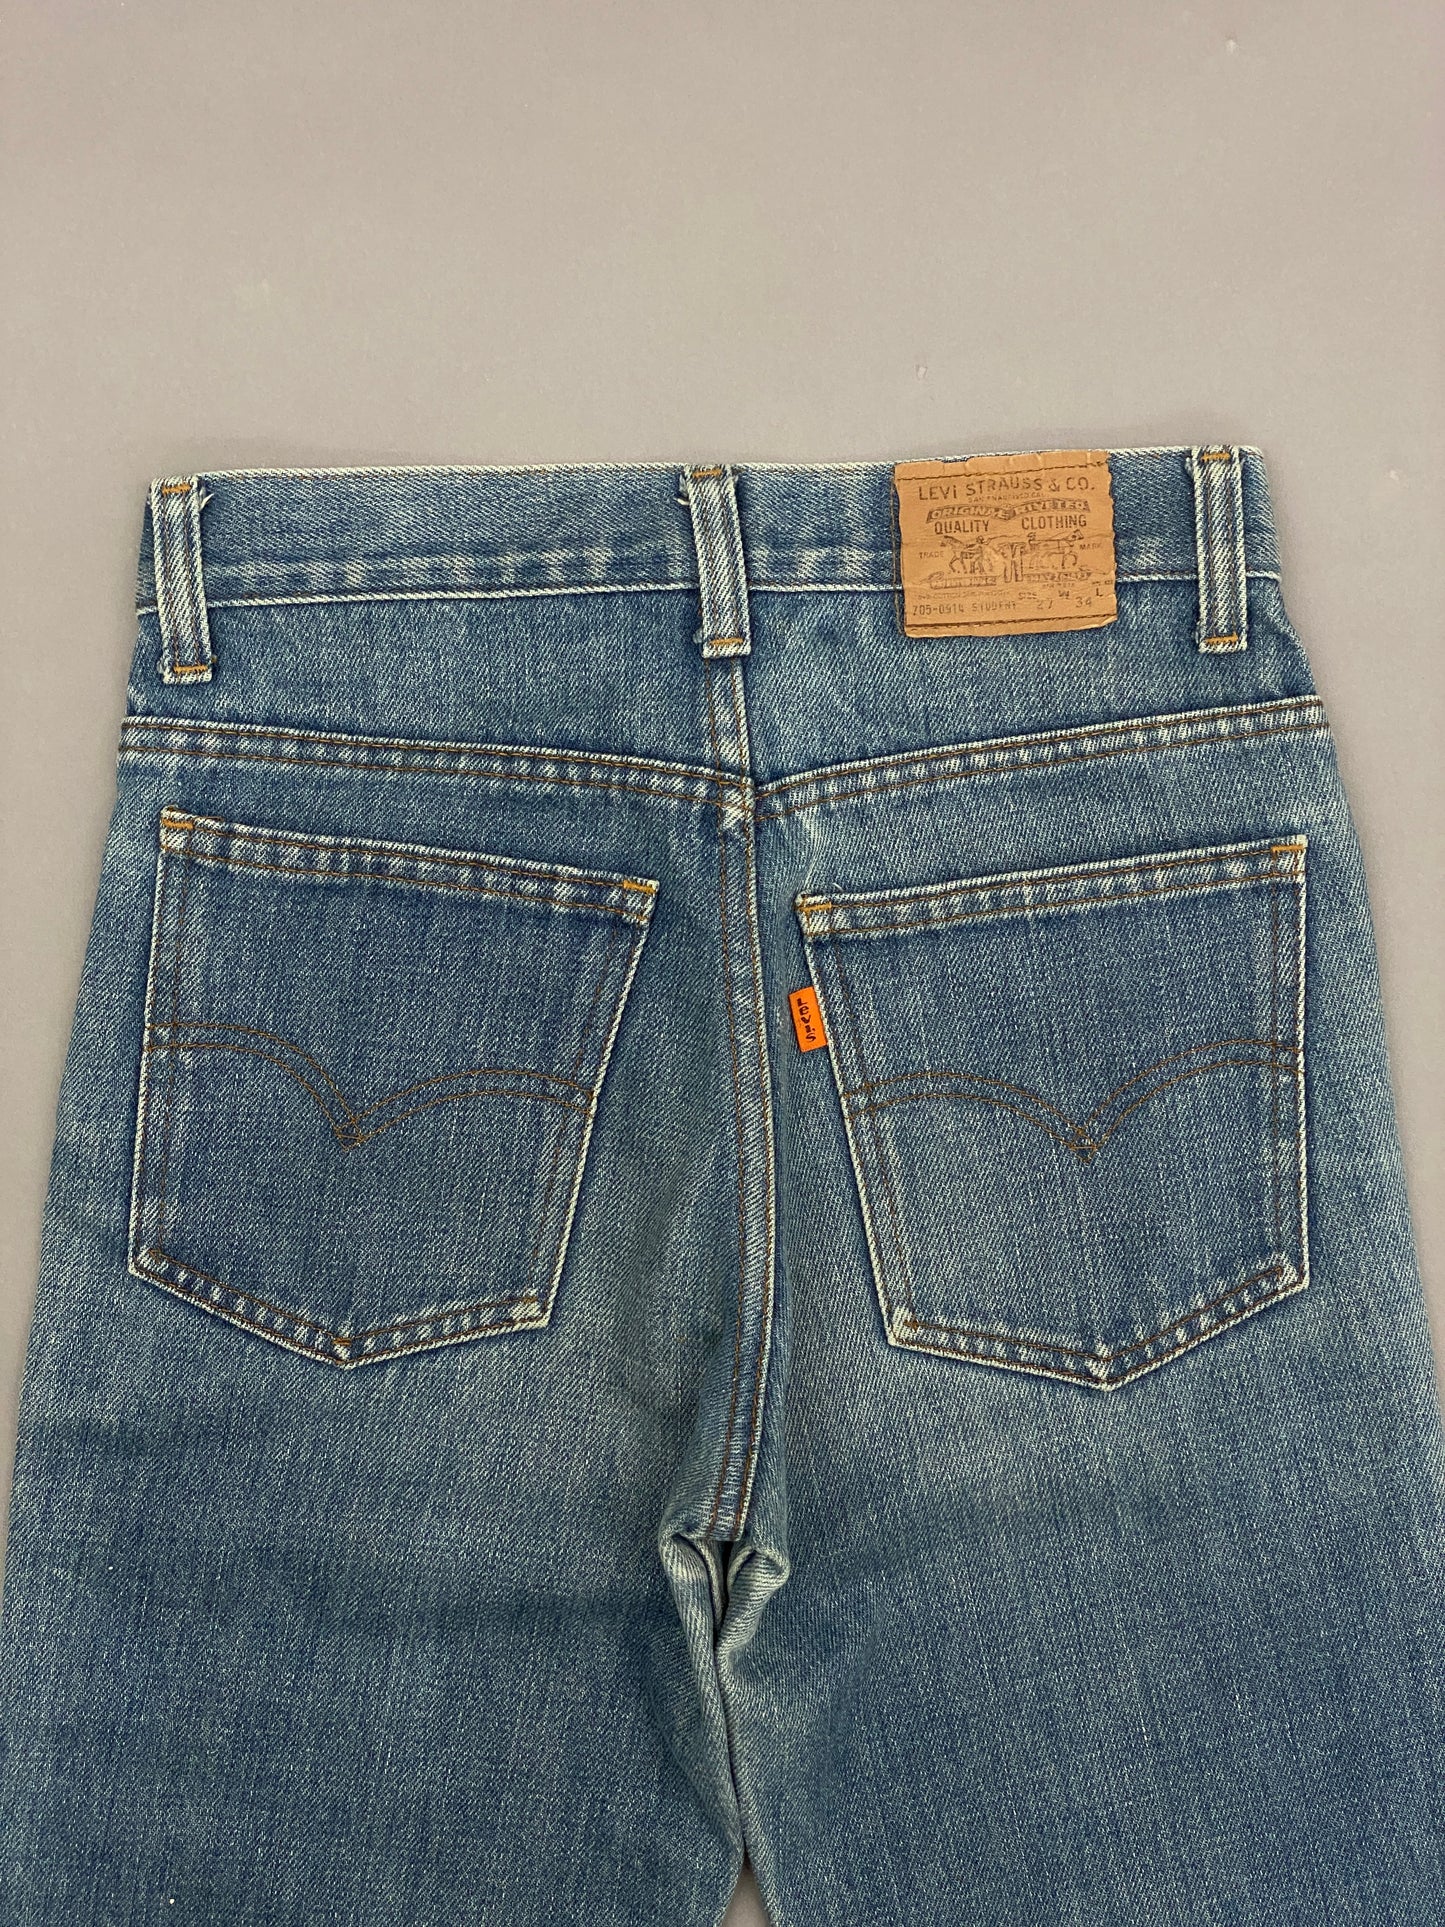 Levis Orange Tab Vintage Jeans - 27